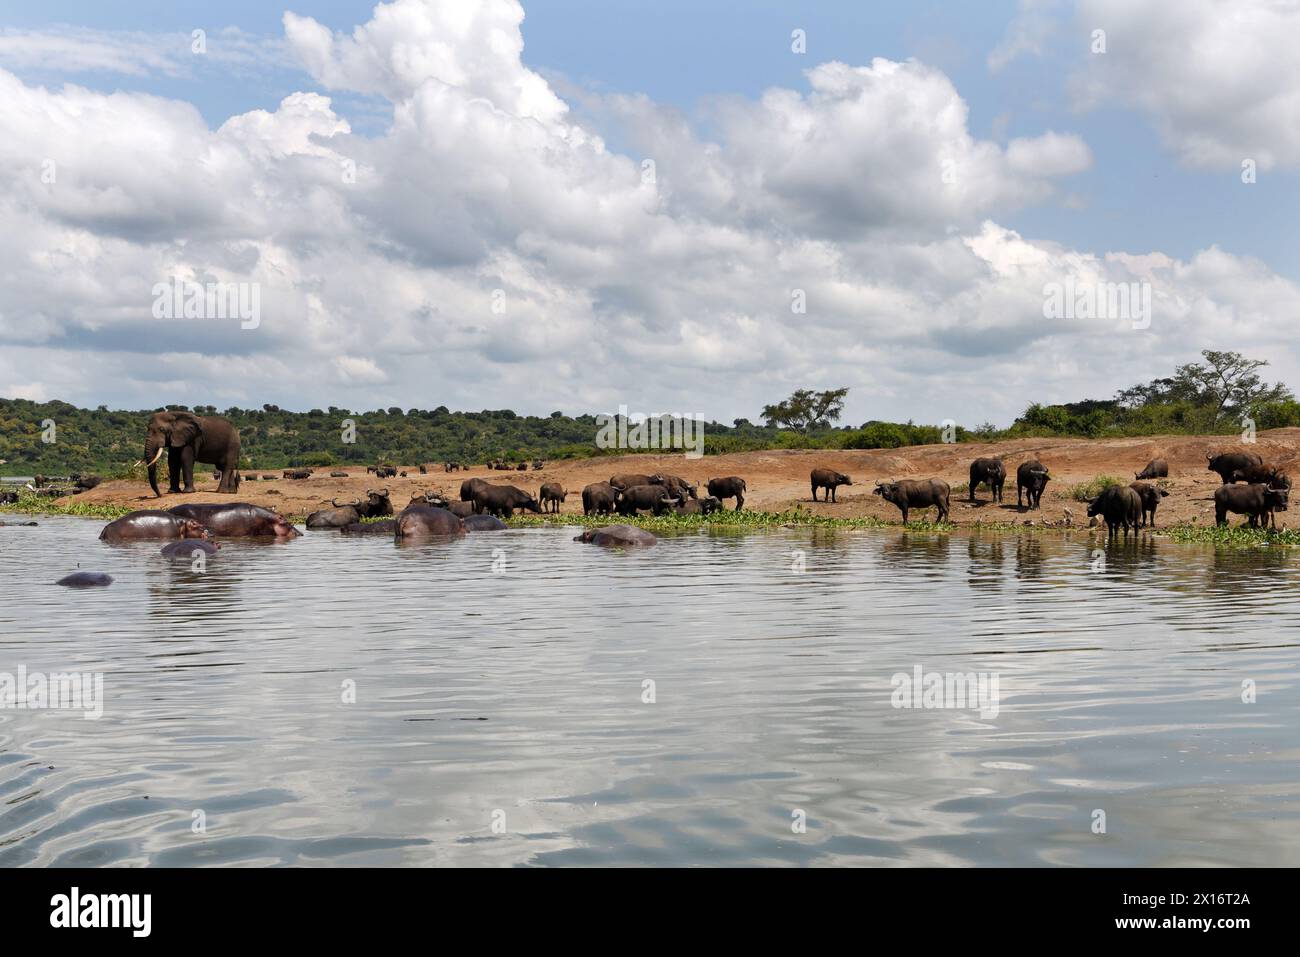 Tra le tranquille acque del Canale di Kazinga in Uganda, una pittoresca scena si dispiega mentre elefanti, bufali e ippopotami condividono pacificamente lo spazio Foto Stock